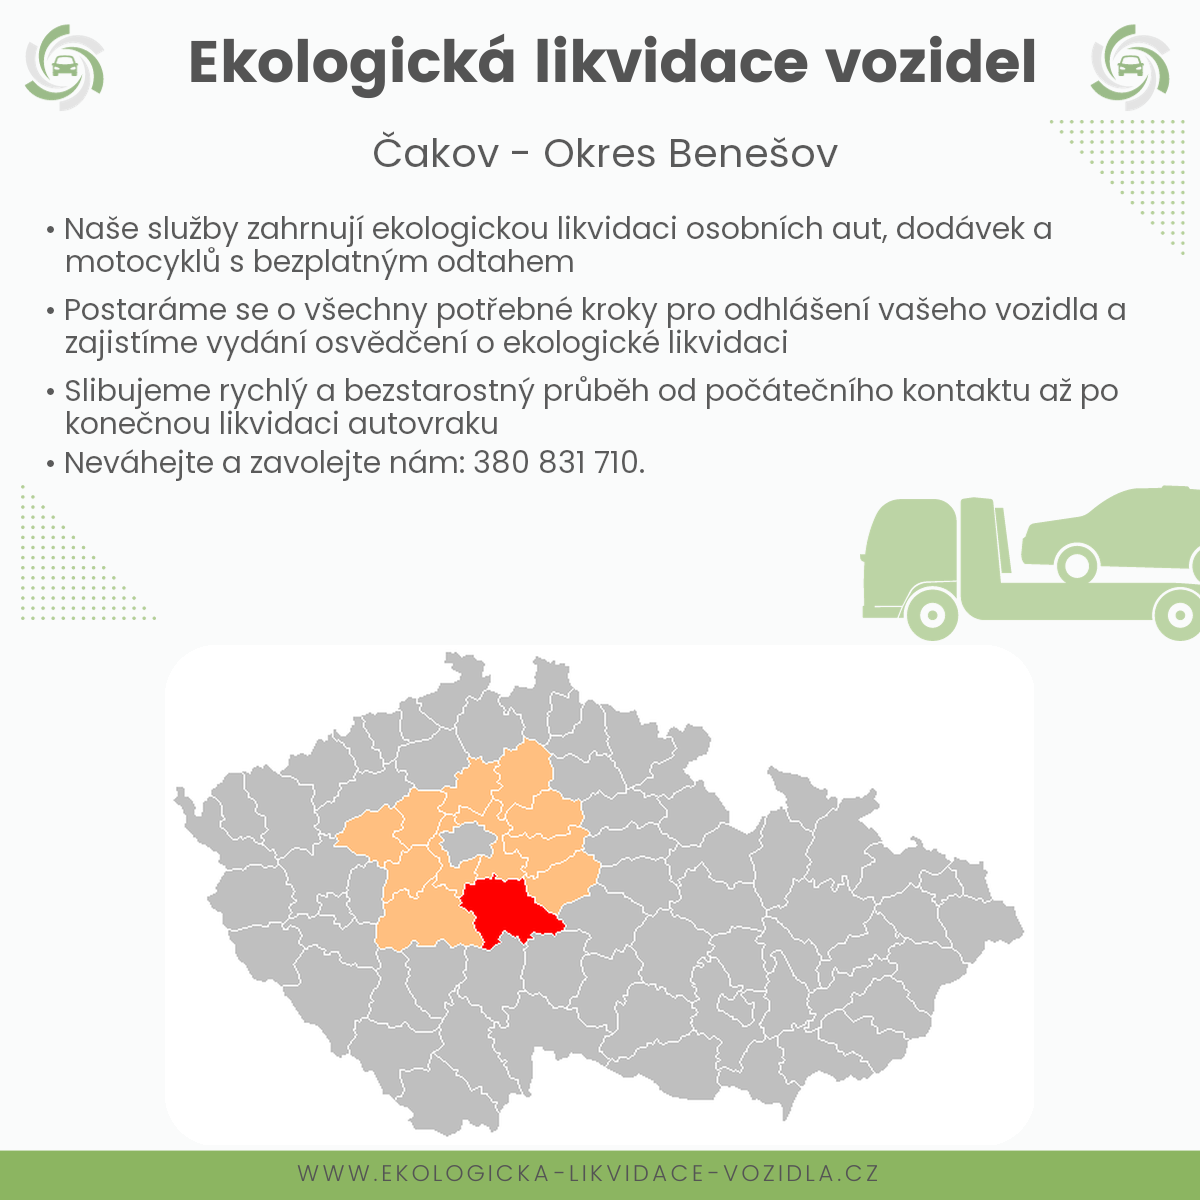 likvidace vozidel - Čakov